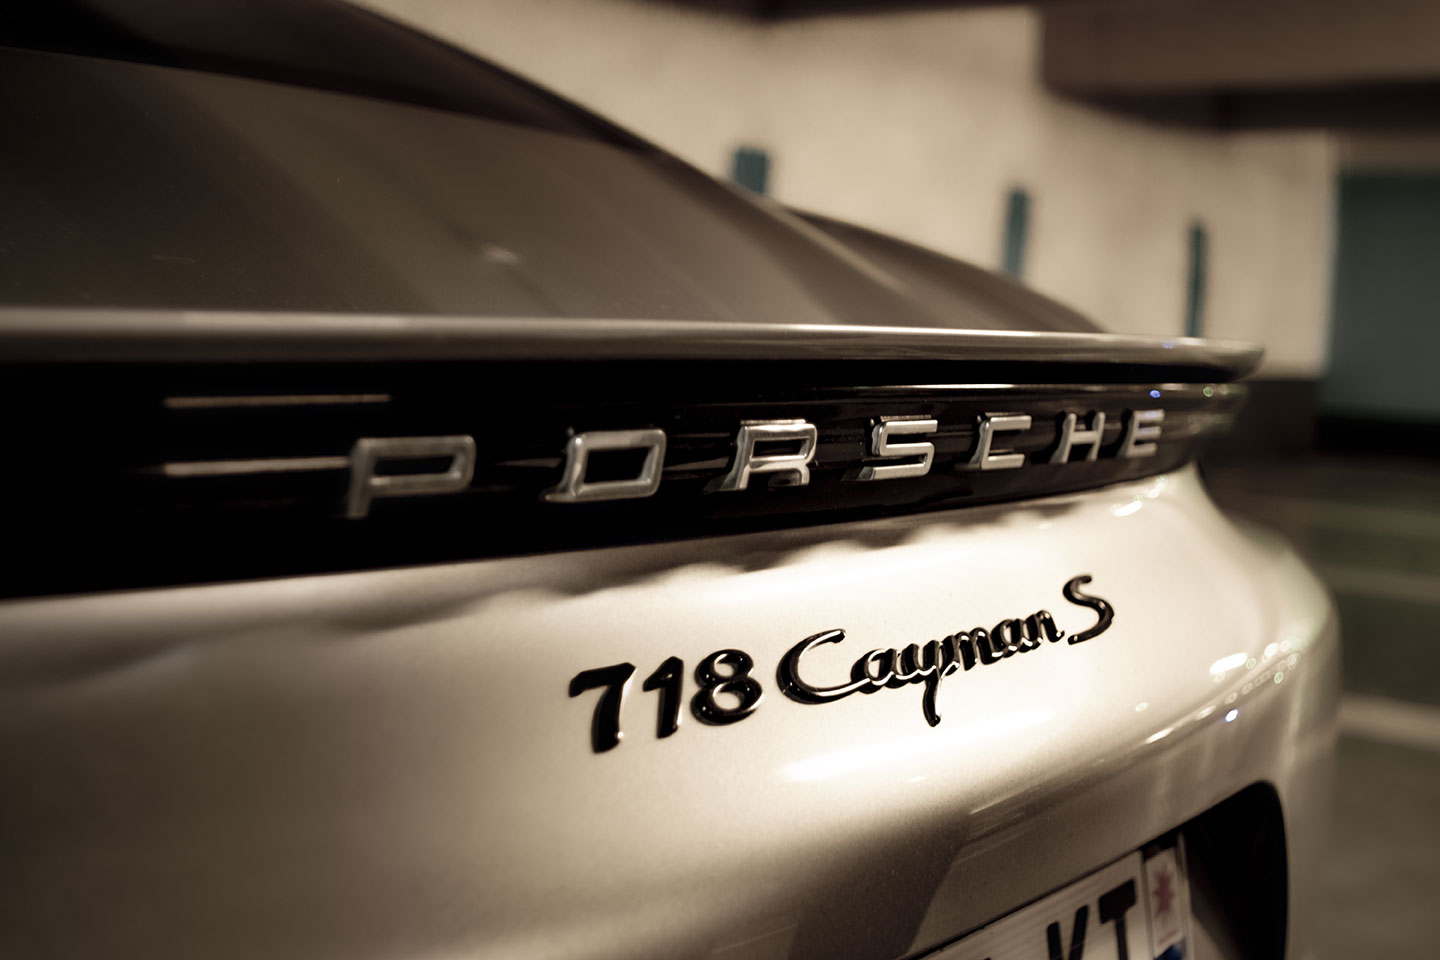 Porsche 718 Cayman S photograph